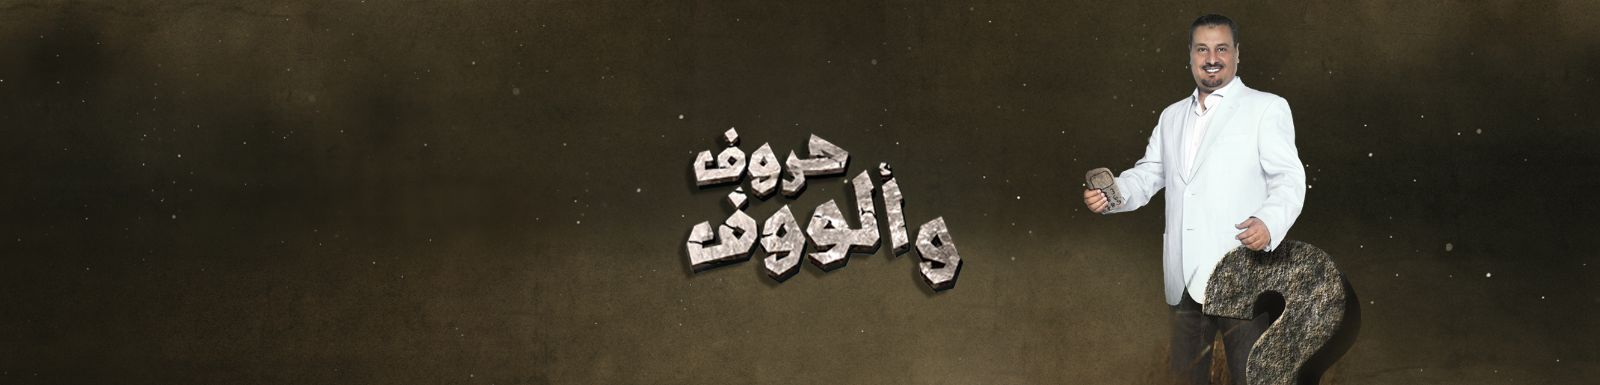 بالفيديو اعلان برنامج حروف وألووف على قناة mbc رمضان 2014